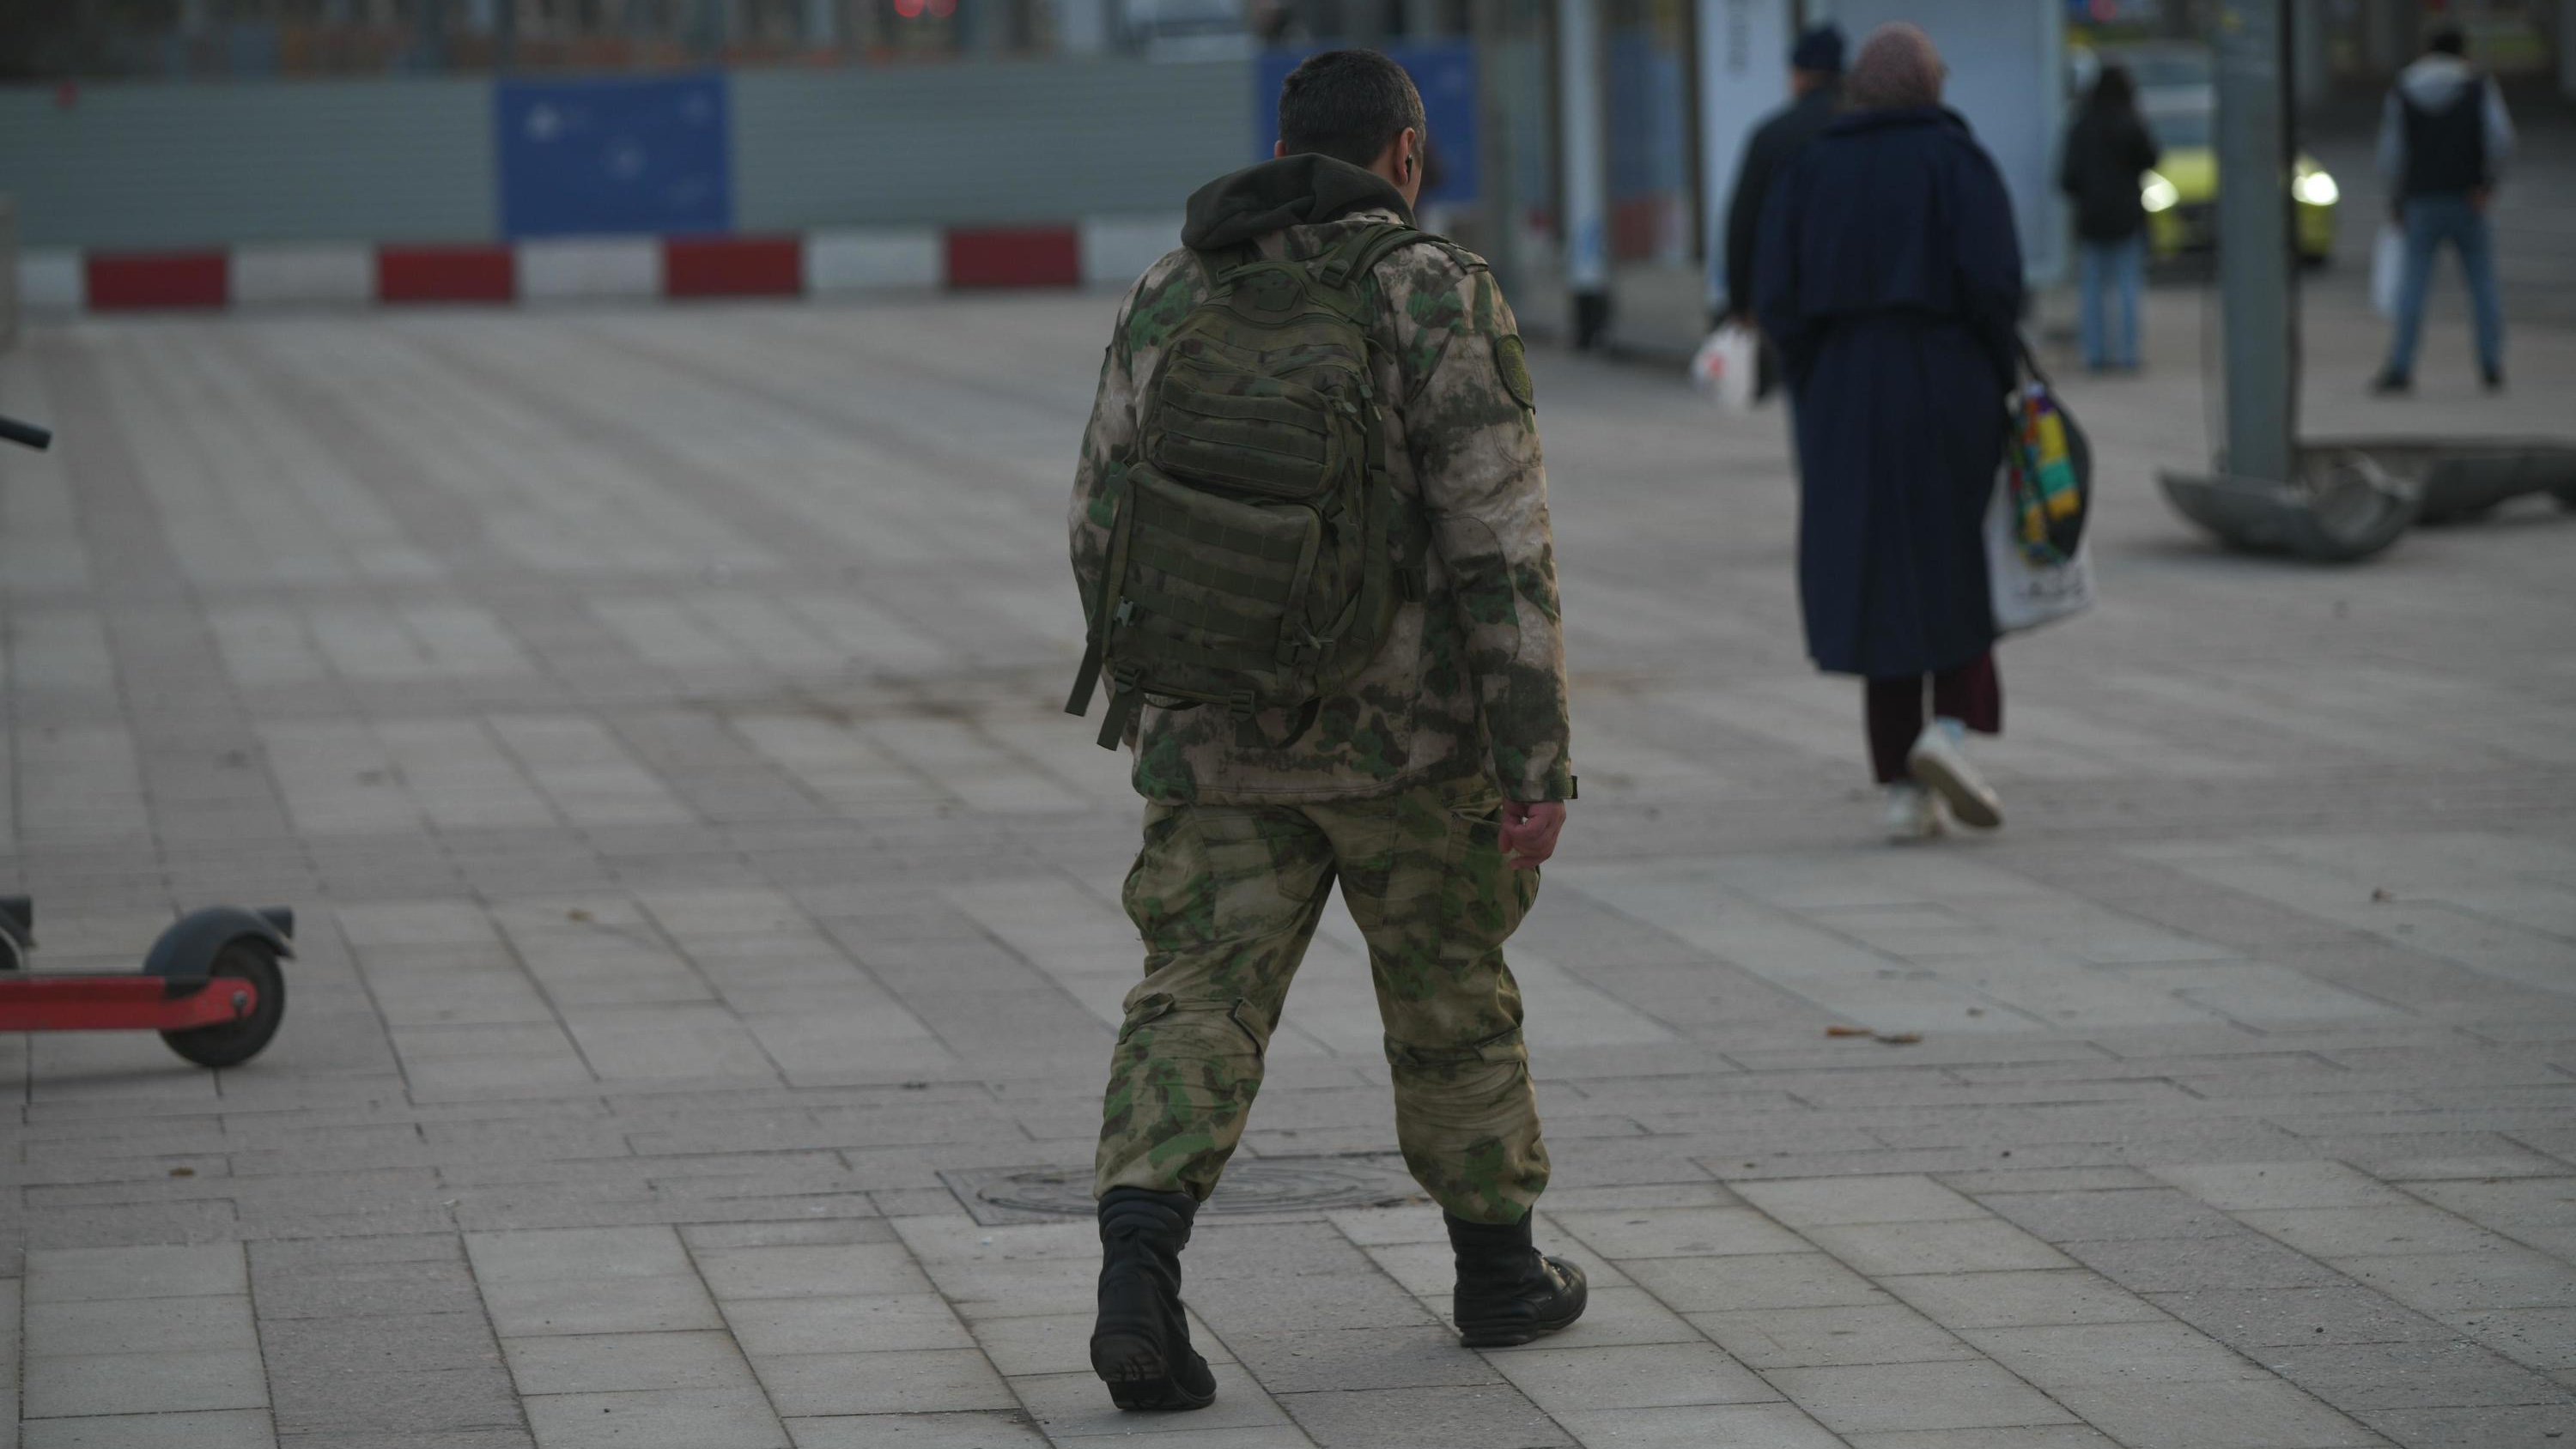 Baza: в Воронежской области может скрываться военный, расстрелявший шестерых сослуживцев